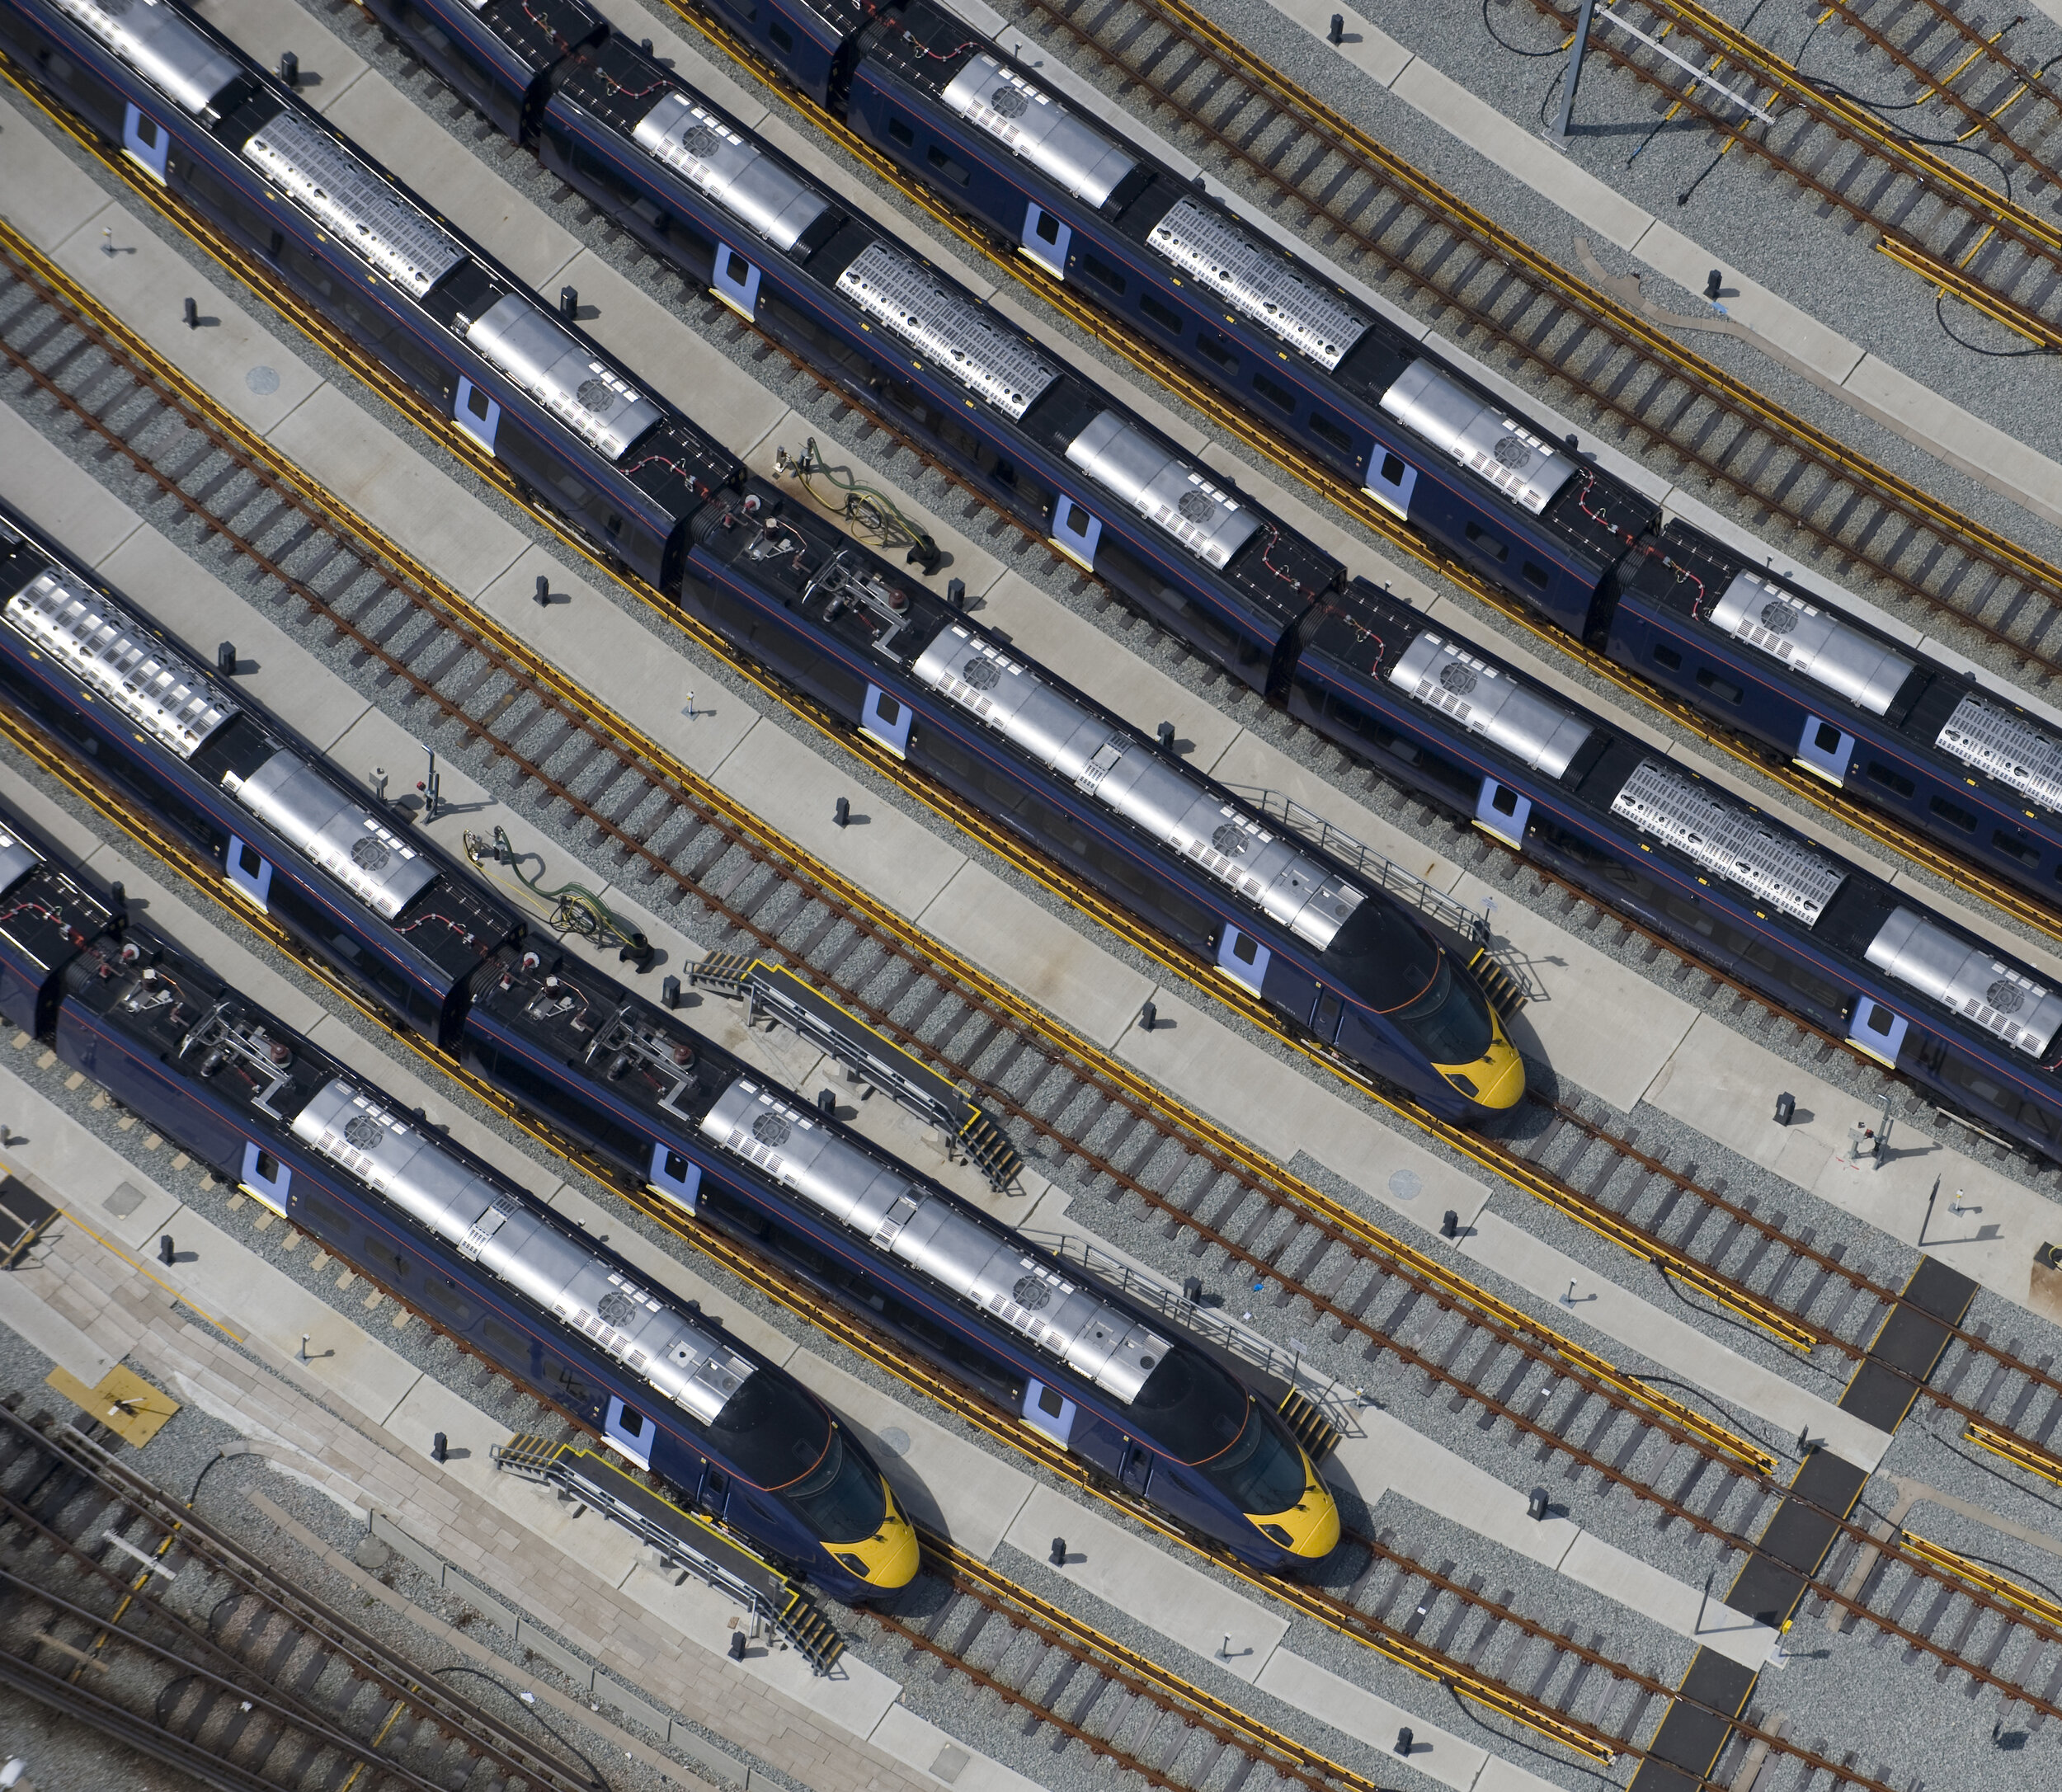 Bullet trains - Ashford Depot.jpg